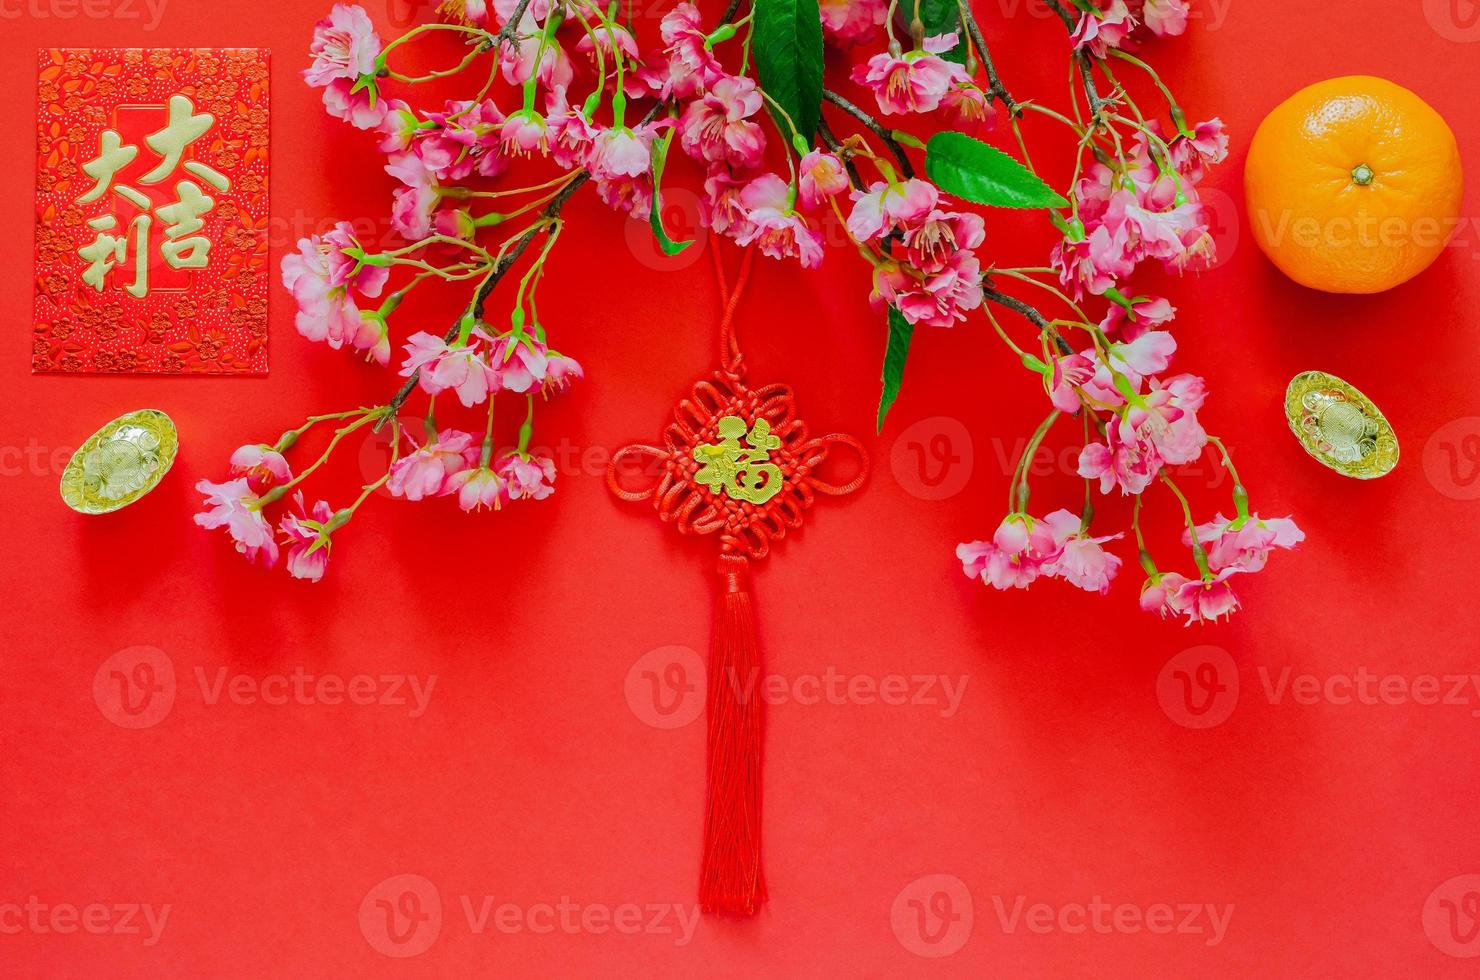 colgante colgante para el año nuevo chino palabra ornamental significa riqueza con paquete de sobre rojo o palabra ang bao significa auspicio, lingotes de oro, flores de naranja y flores chinas sobre fondo rojo. foto